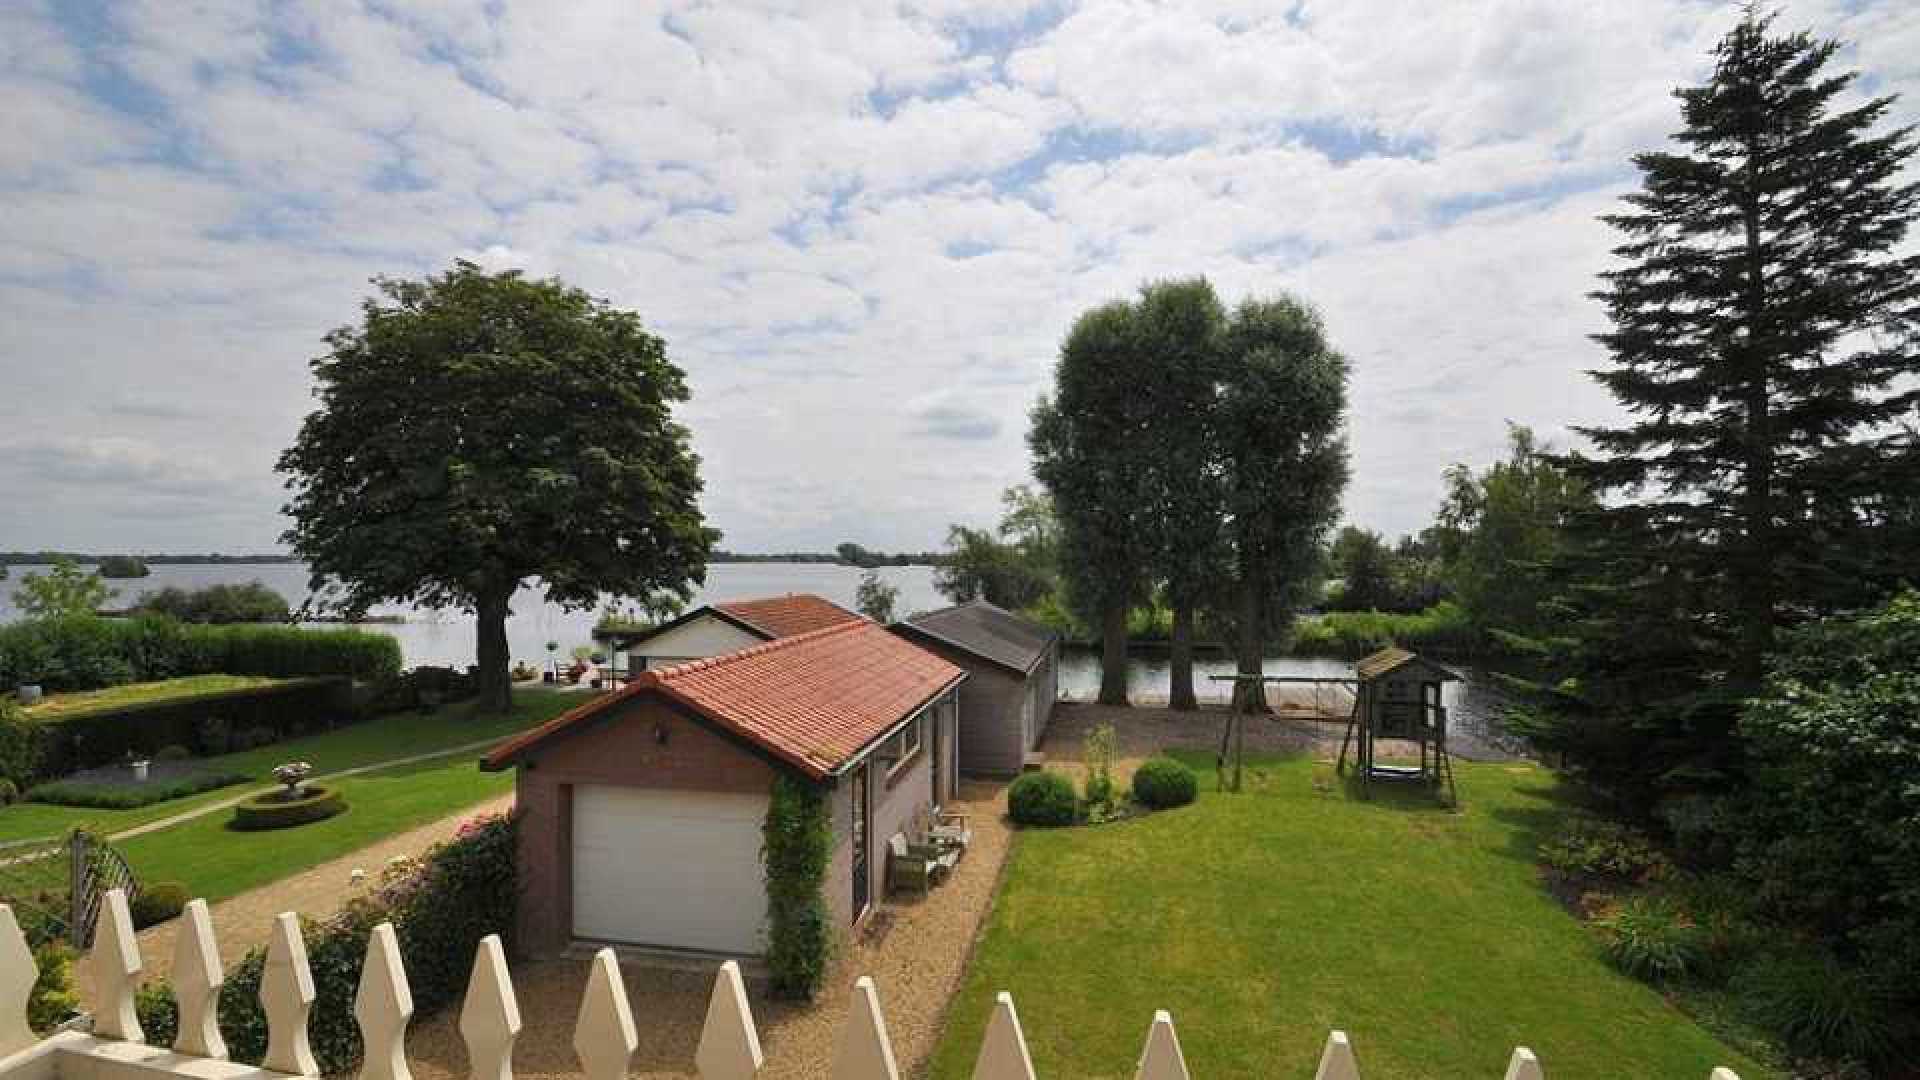 Thomas Berge huurt villa met botenhuis en eiland. Zie foto's 19